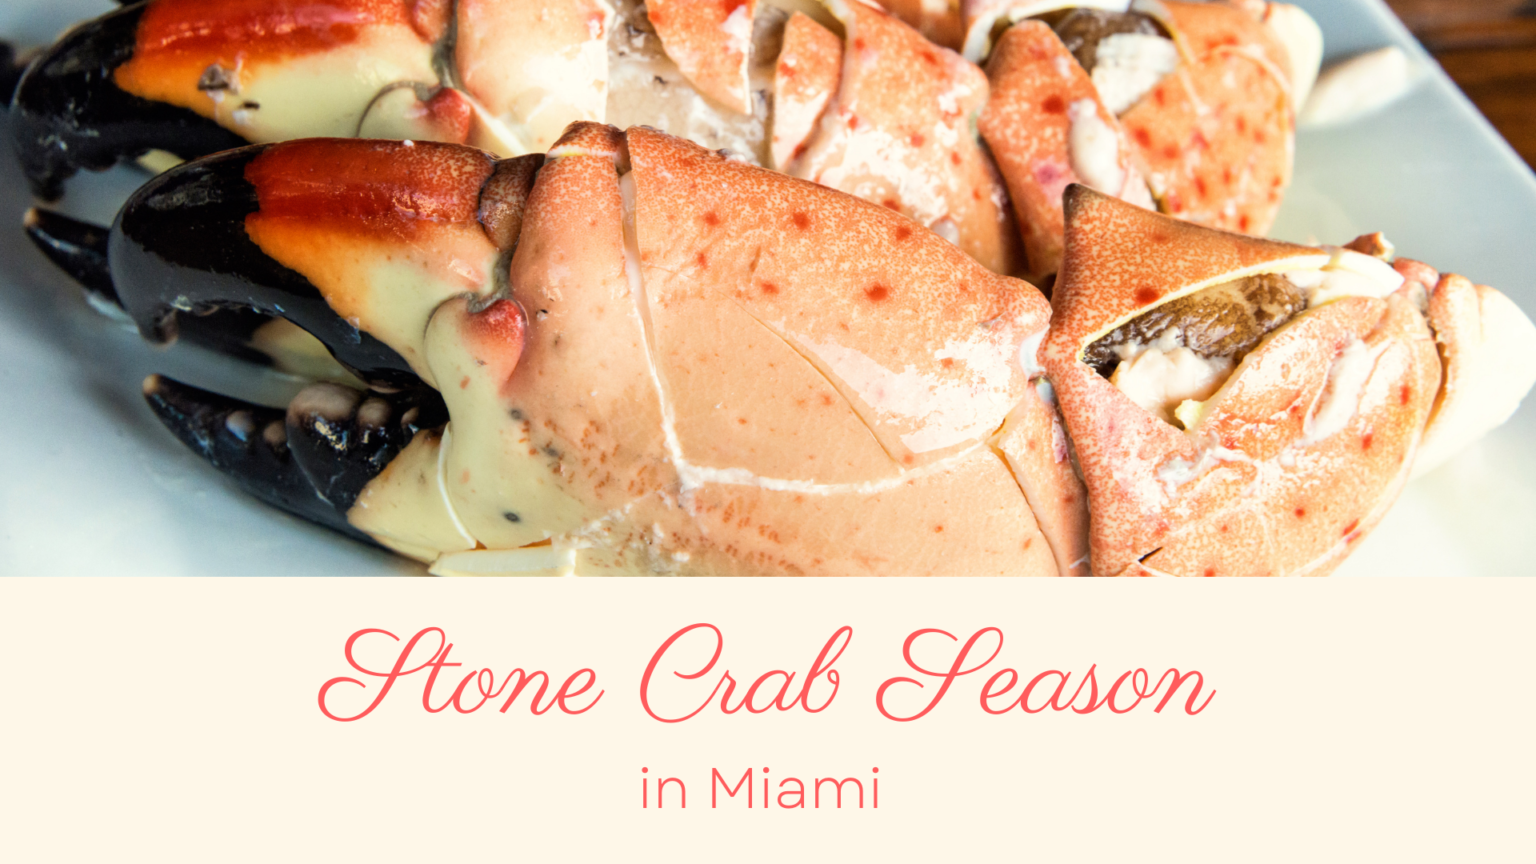 stone crab season in miami 305 Hive